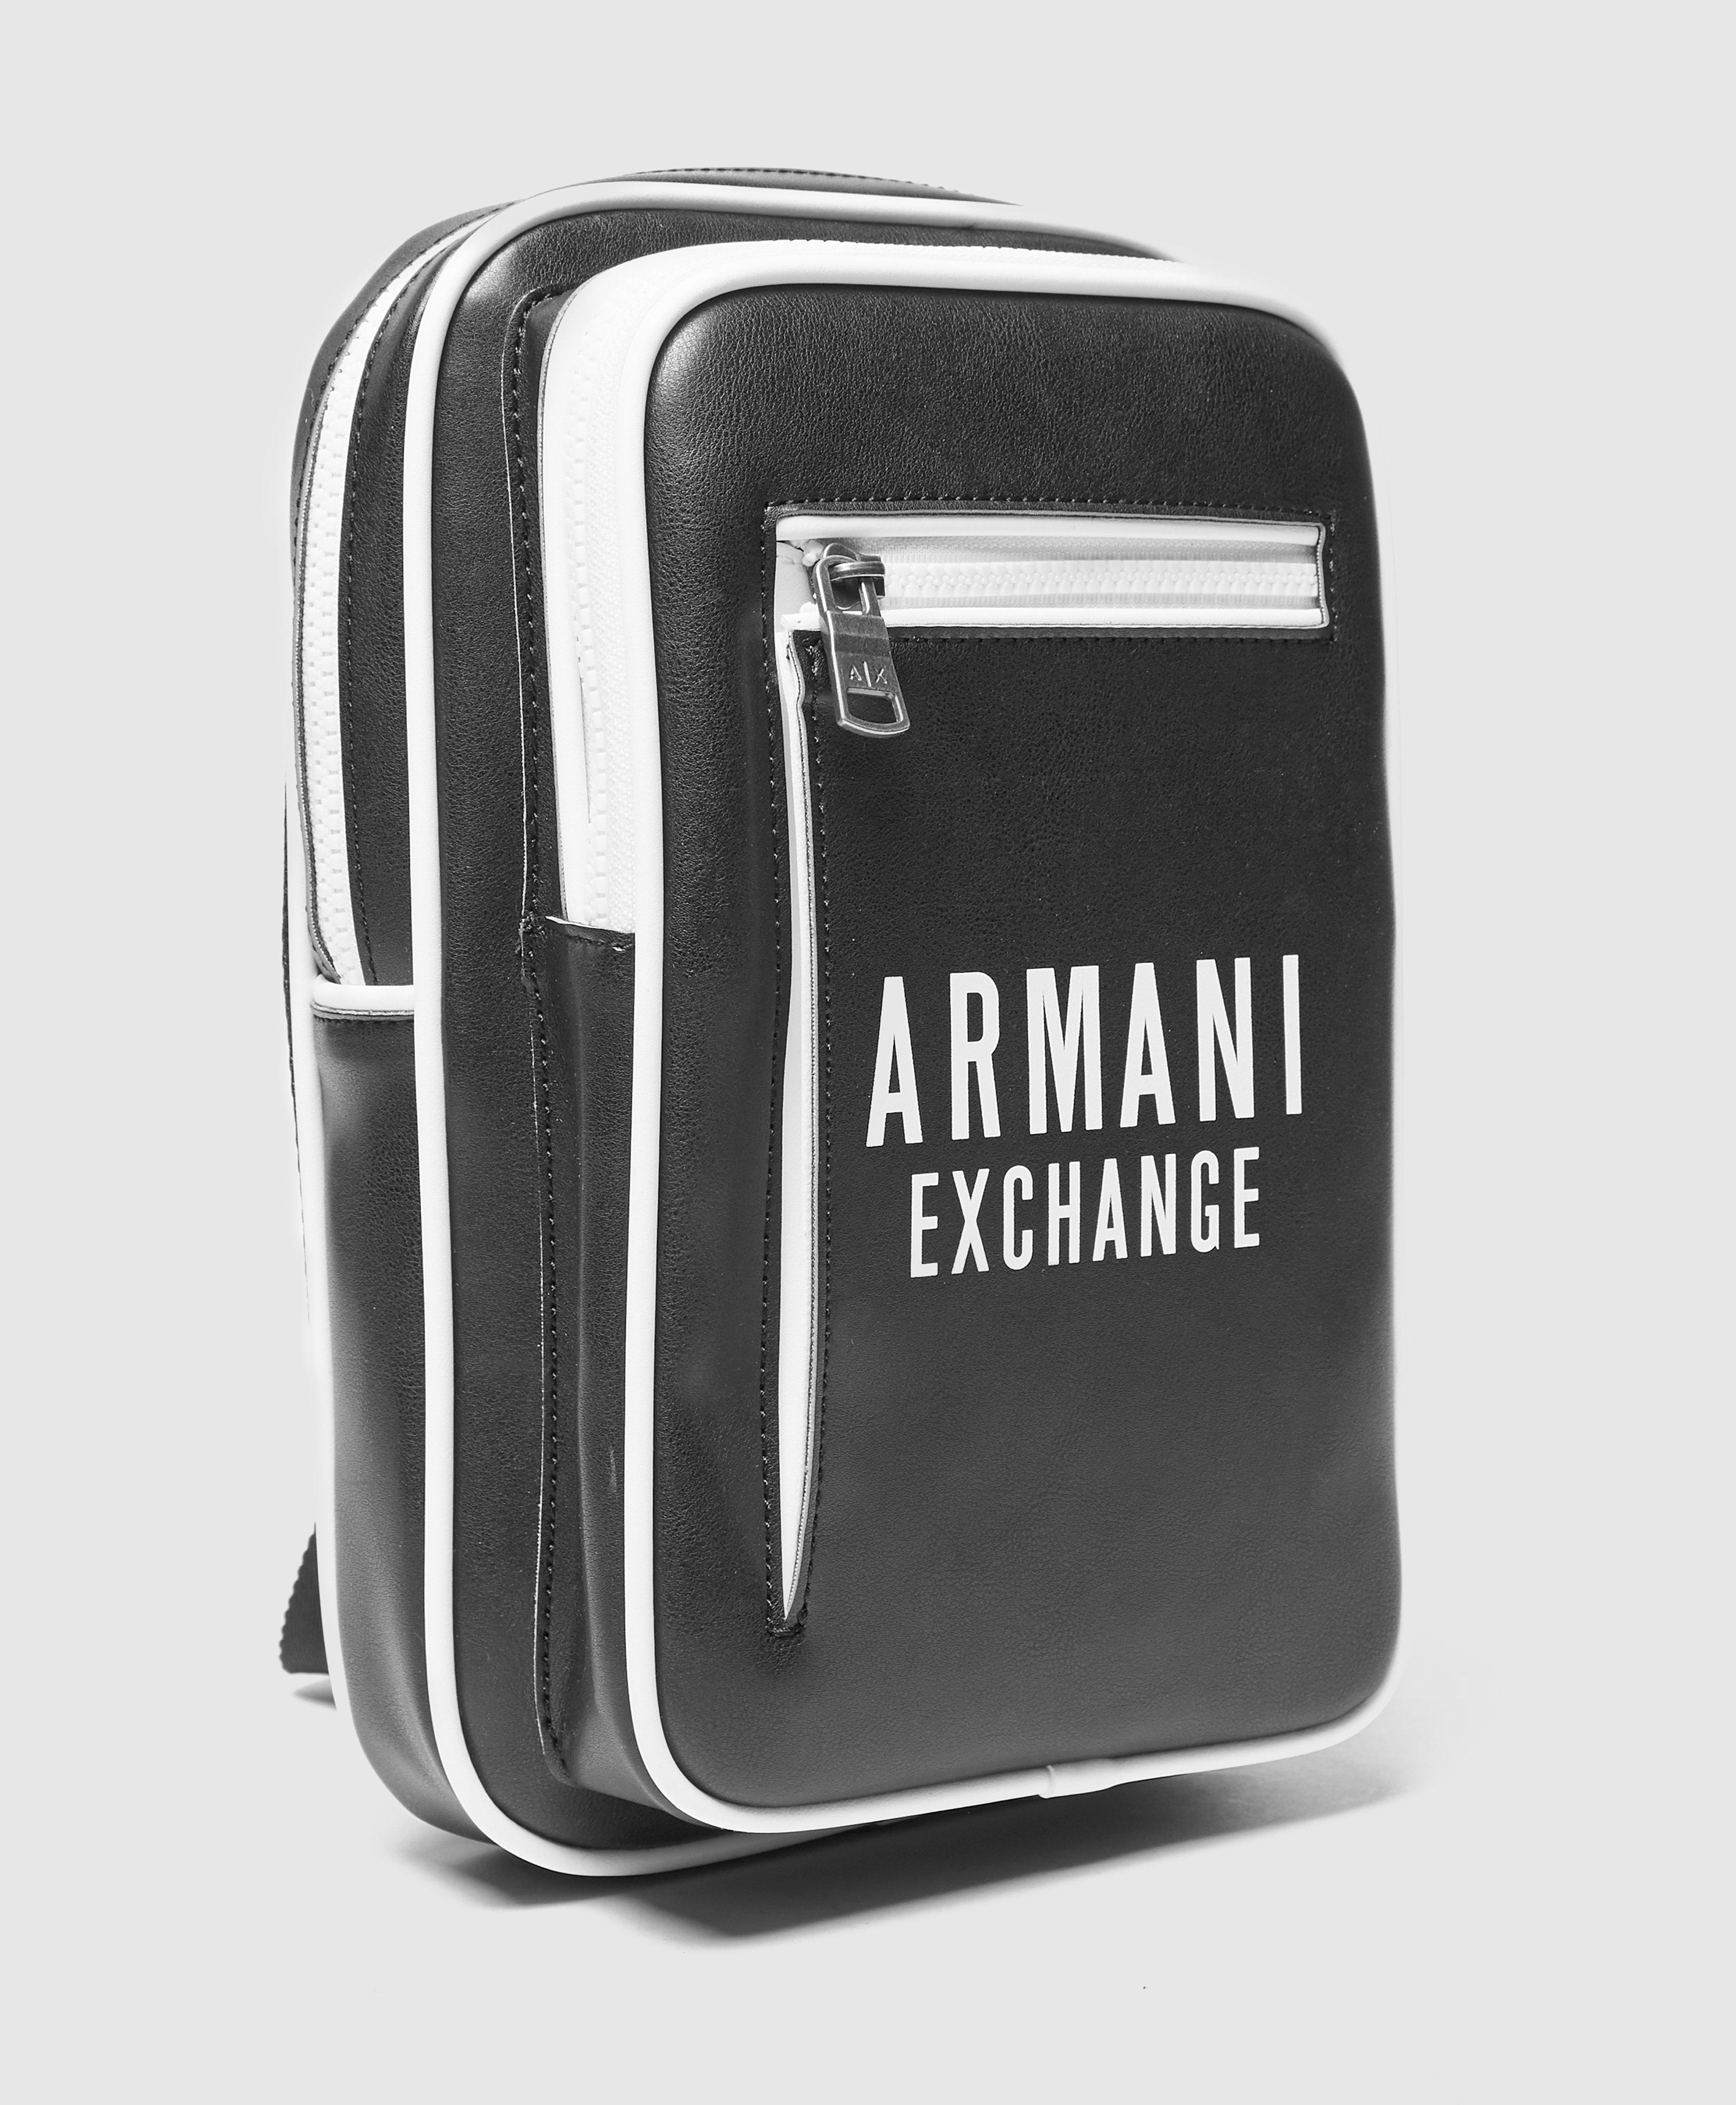 armani exchange body bag